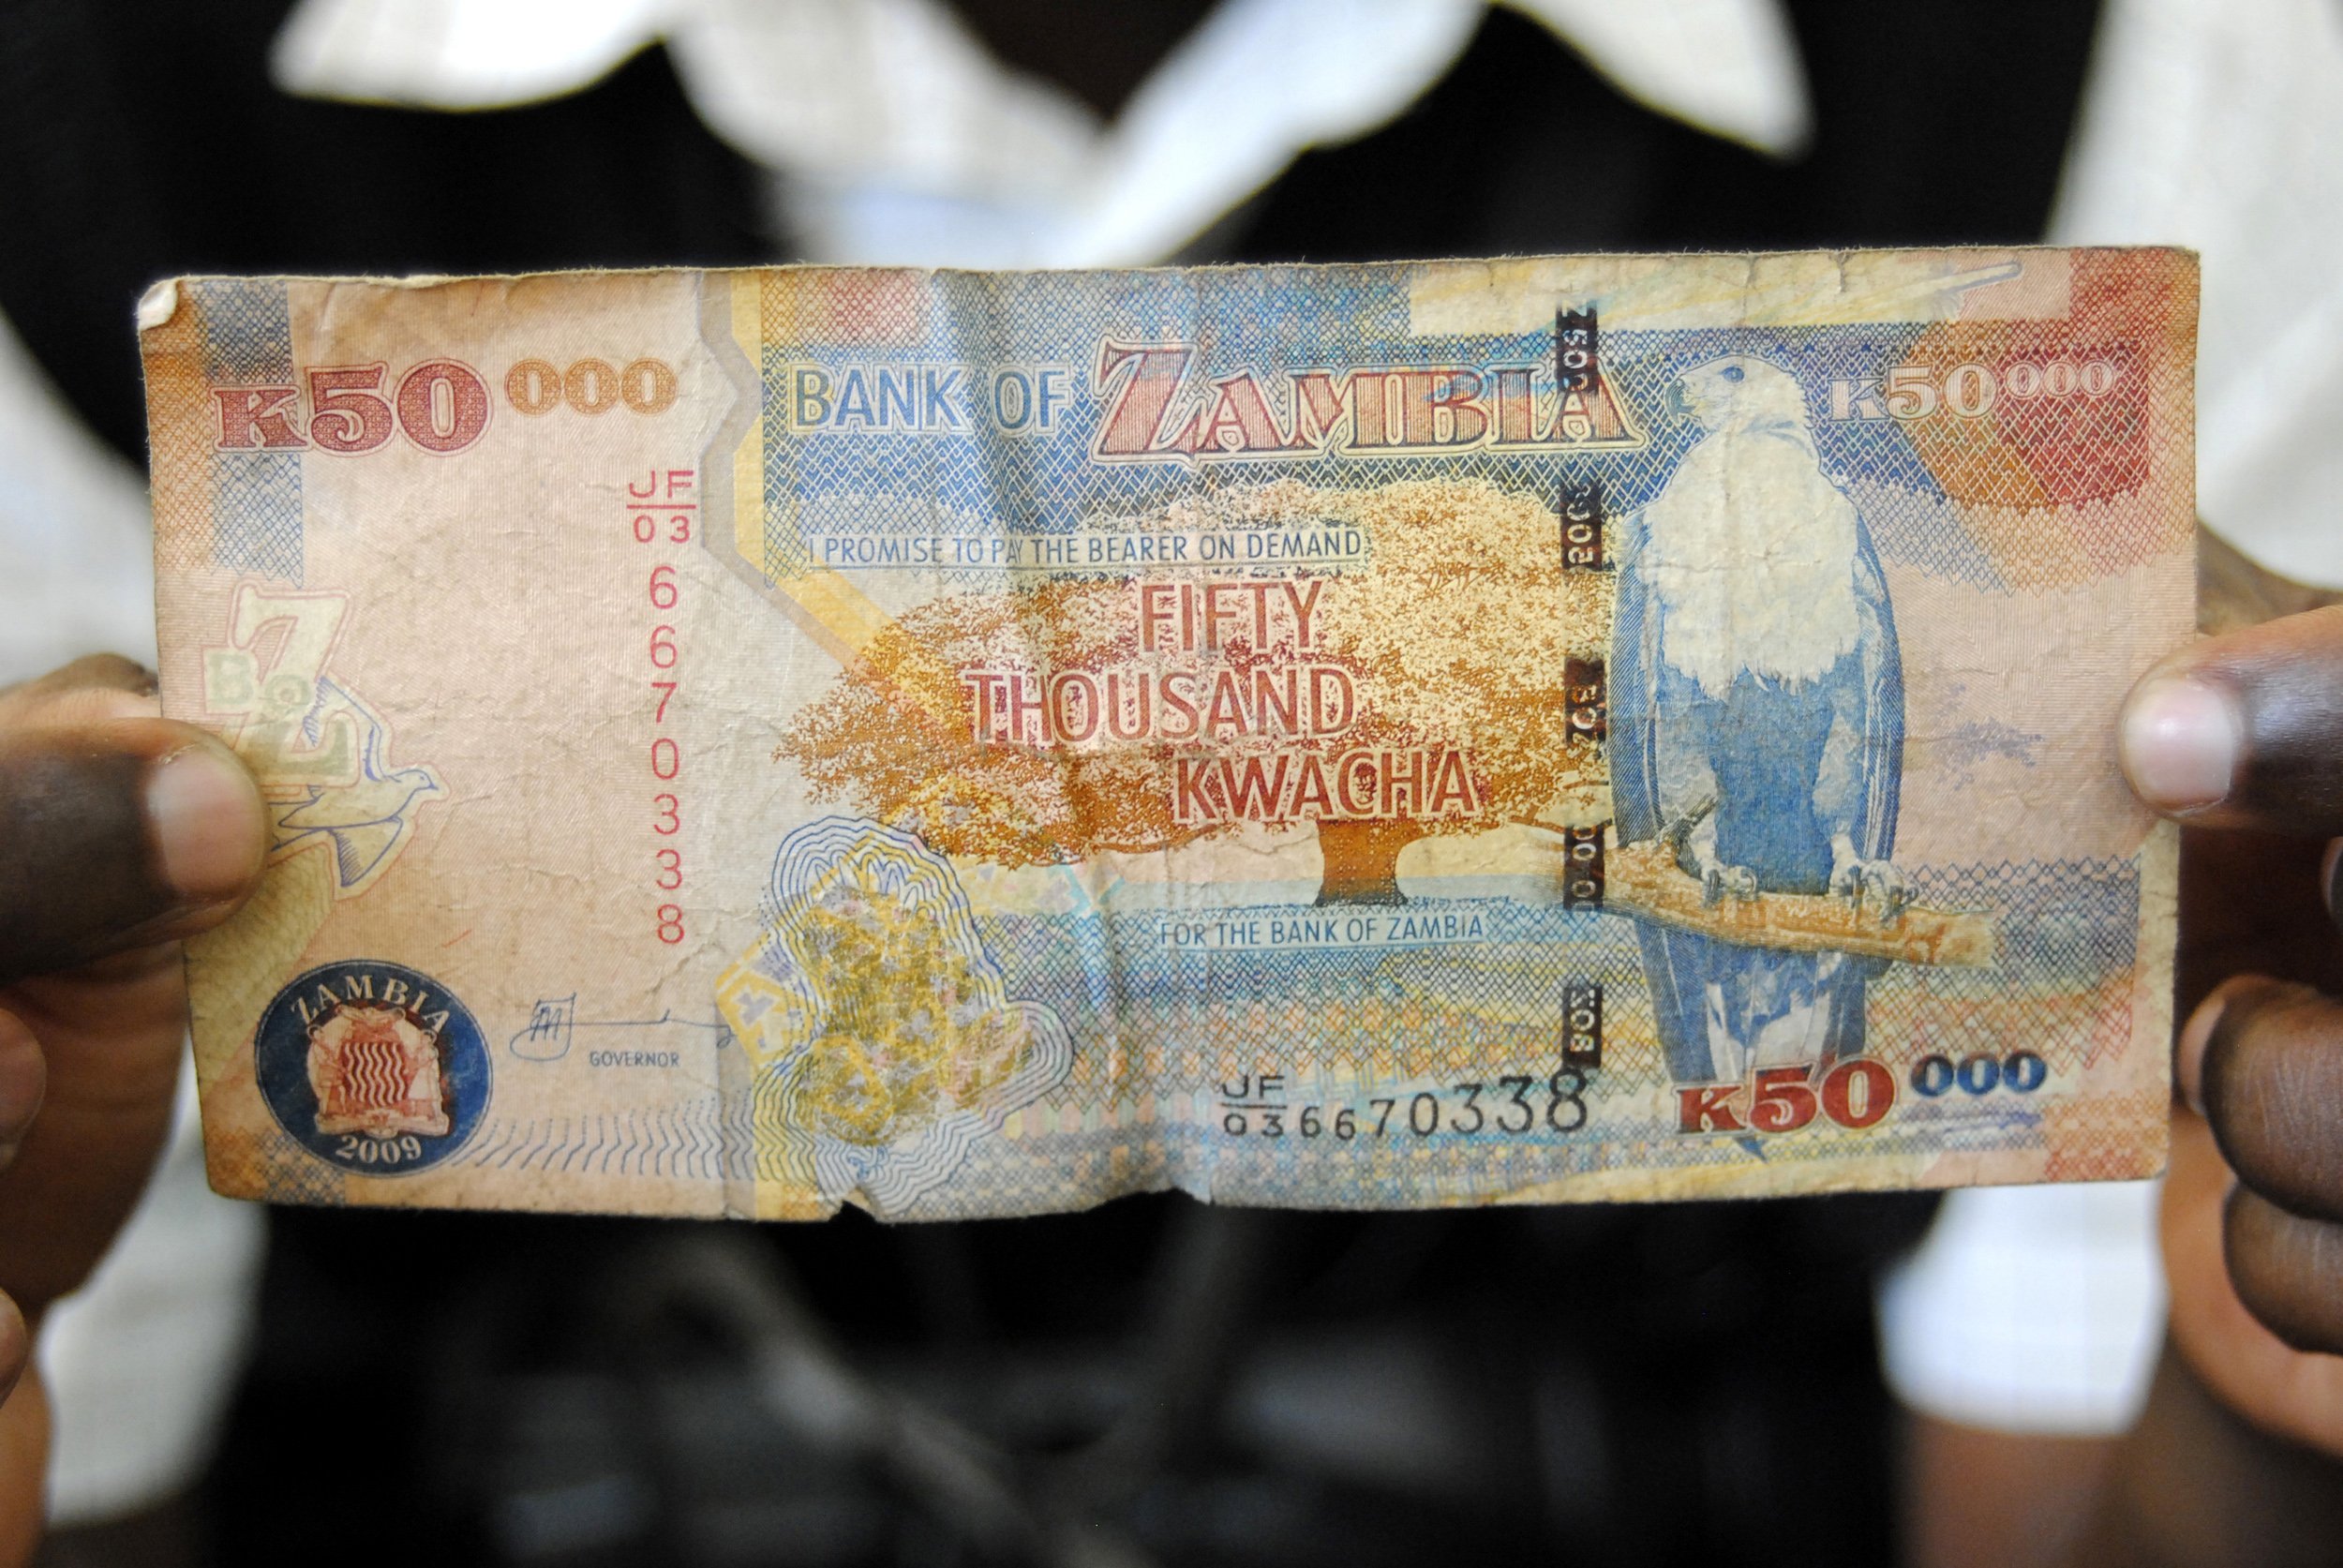 A 50,000 Kwacha note is seen in Lusaka, Zambia.